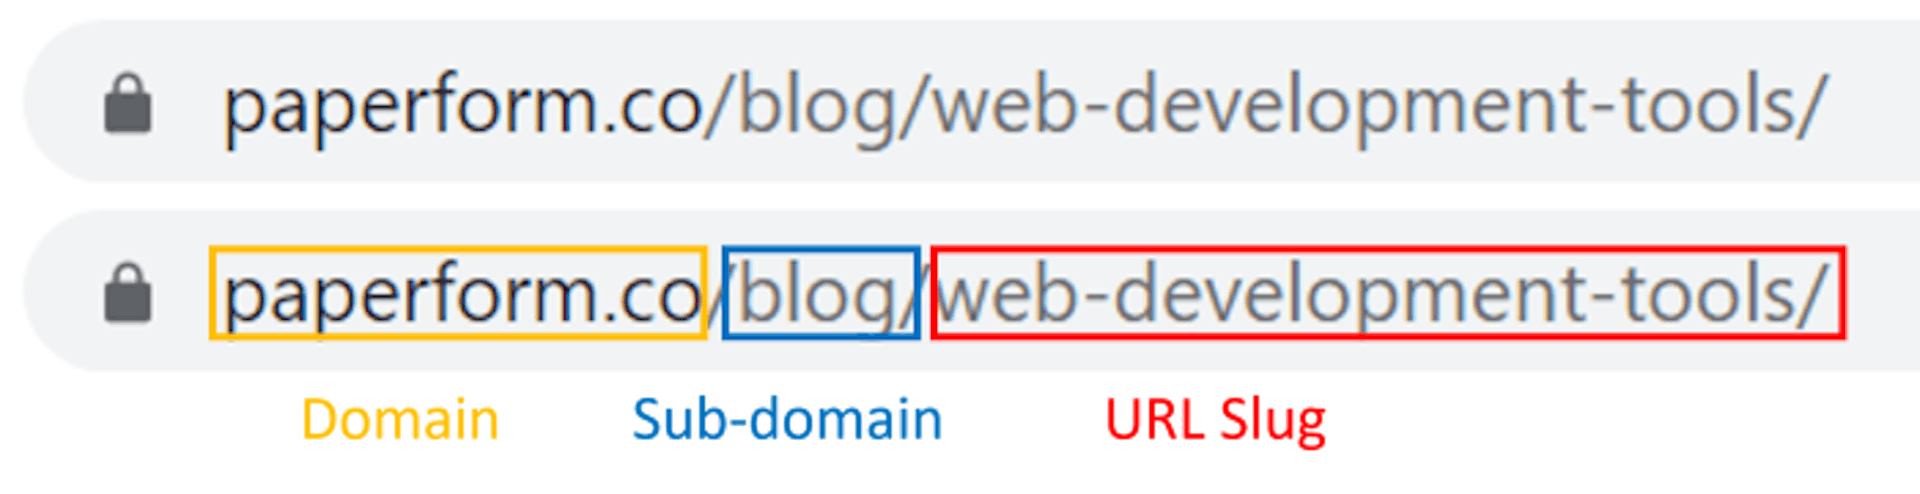 URL explained